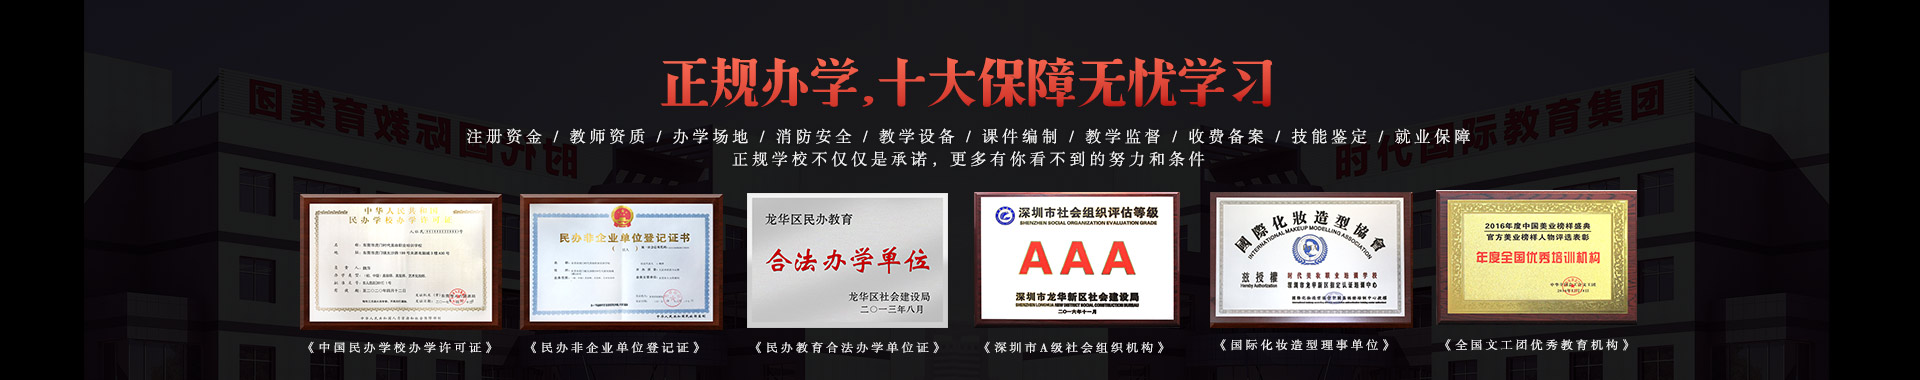 福永环球体育网站下载平台环球体育app最新地址分校